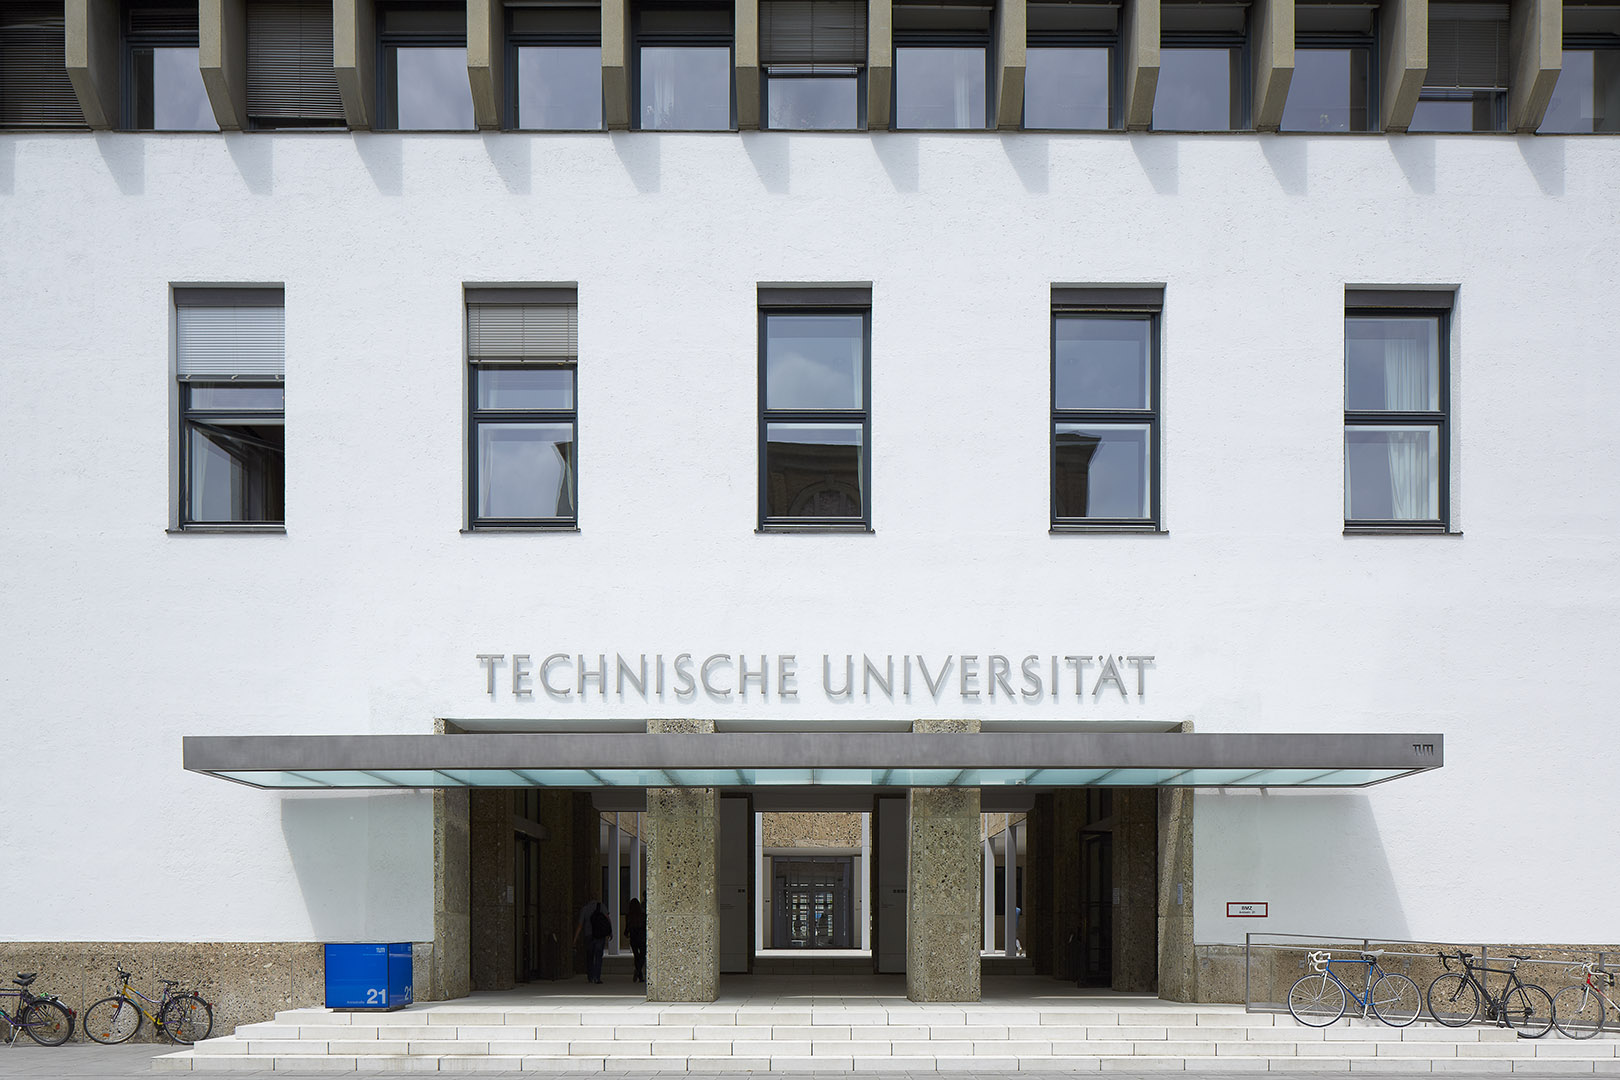 Technische Universität, Munich